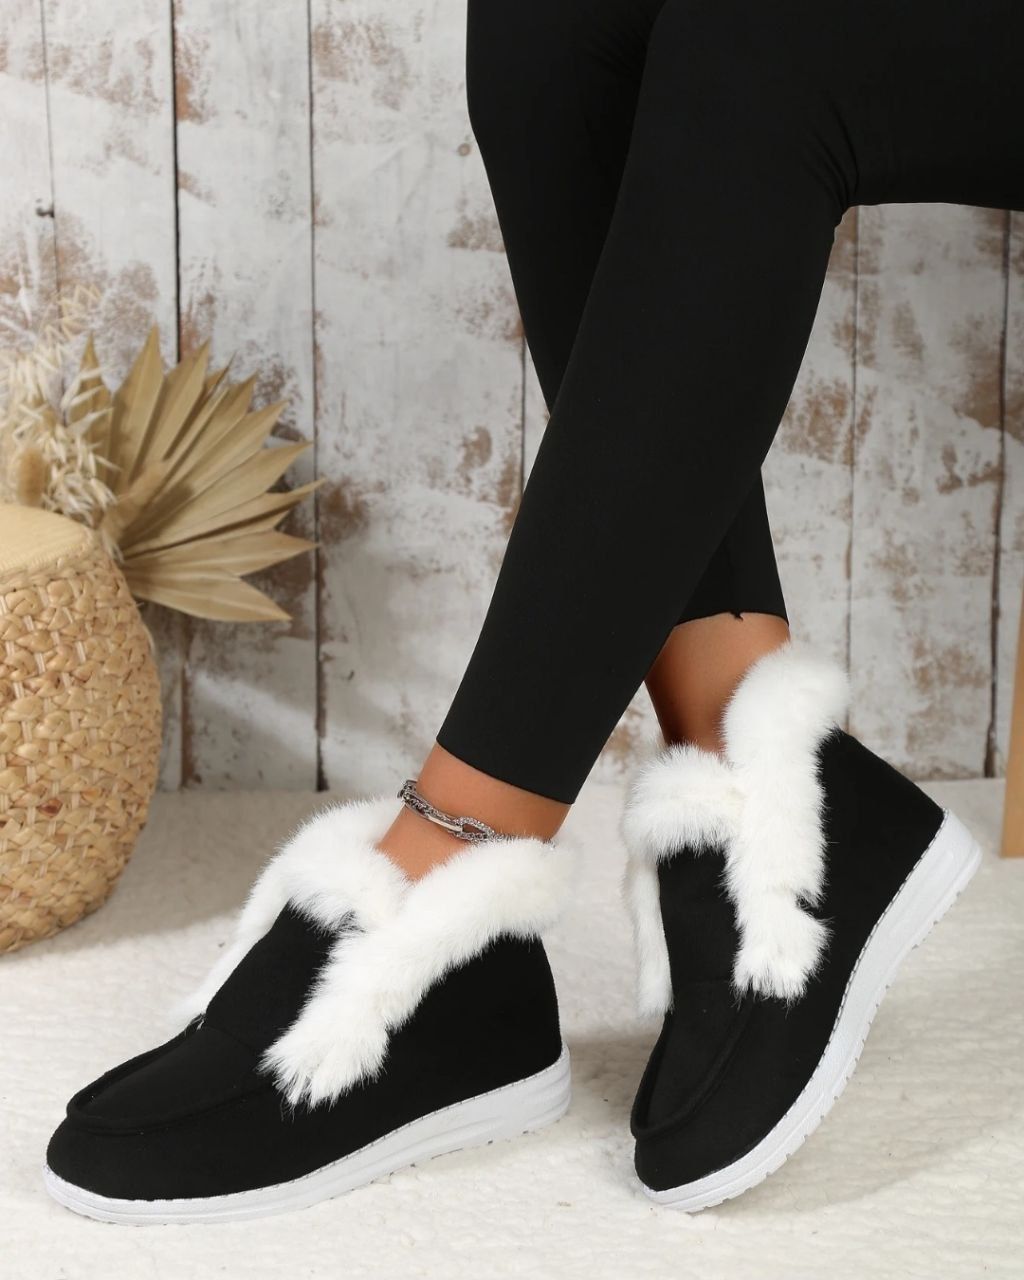 Шикарные батинки мягкие тёплые очень красивые в наличии зимние